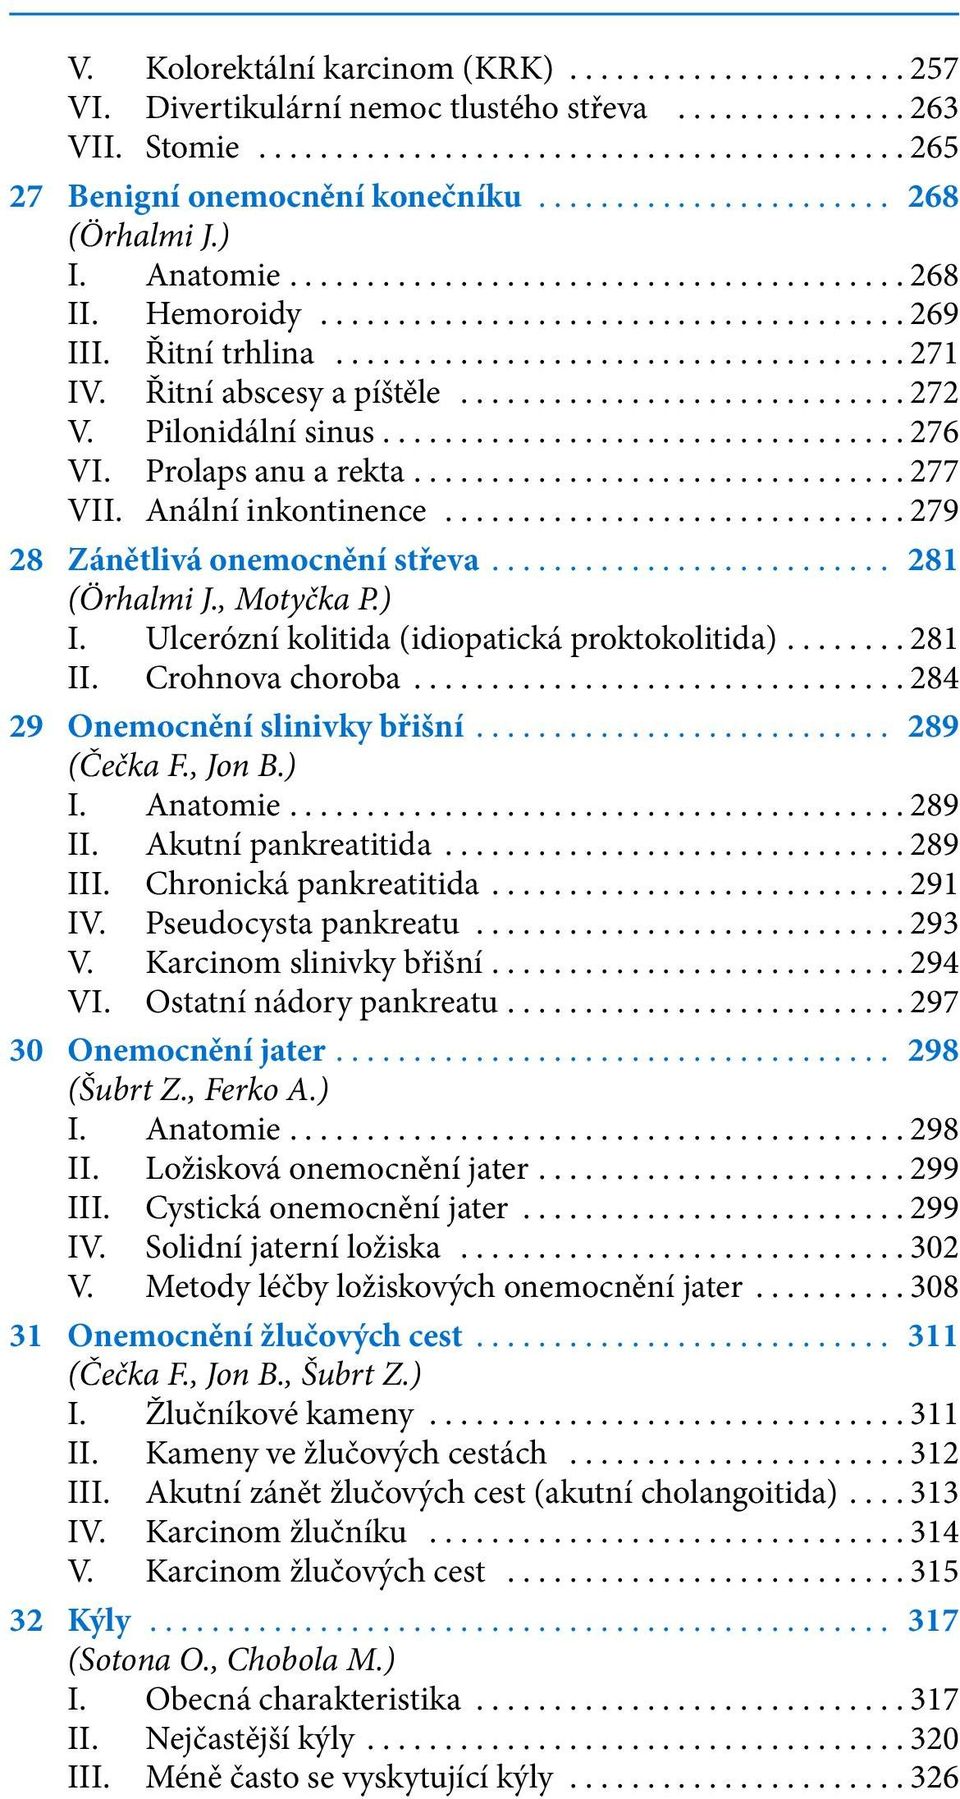 , Motyčka P.) I. Ulcerózní kolitida (idiopatická proktokolitida)...281 II. Crohnova choroba...284 29 Onemocnění slinivky břišní... 289 (Čečka F., Jon B.) I. Anatomie...289 II. Akutní pankreatitida.